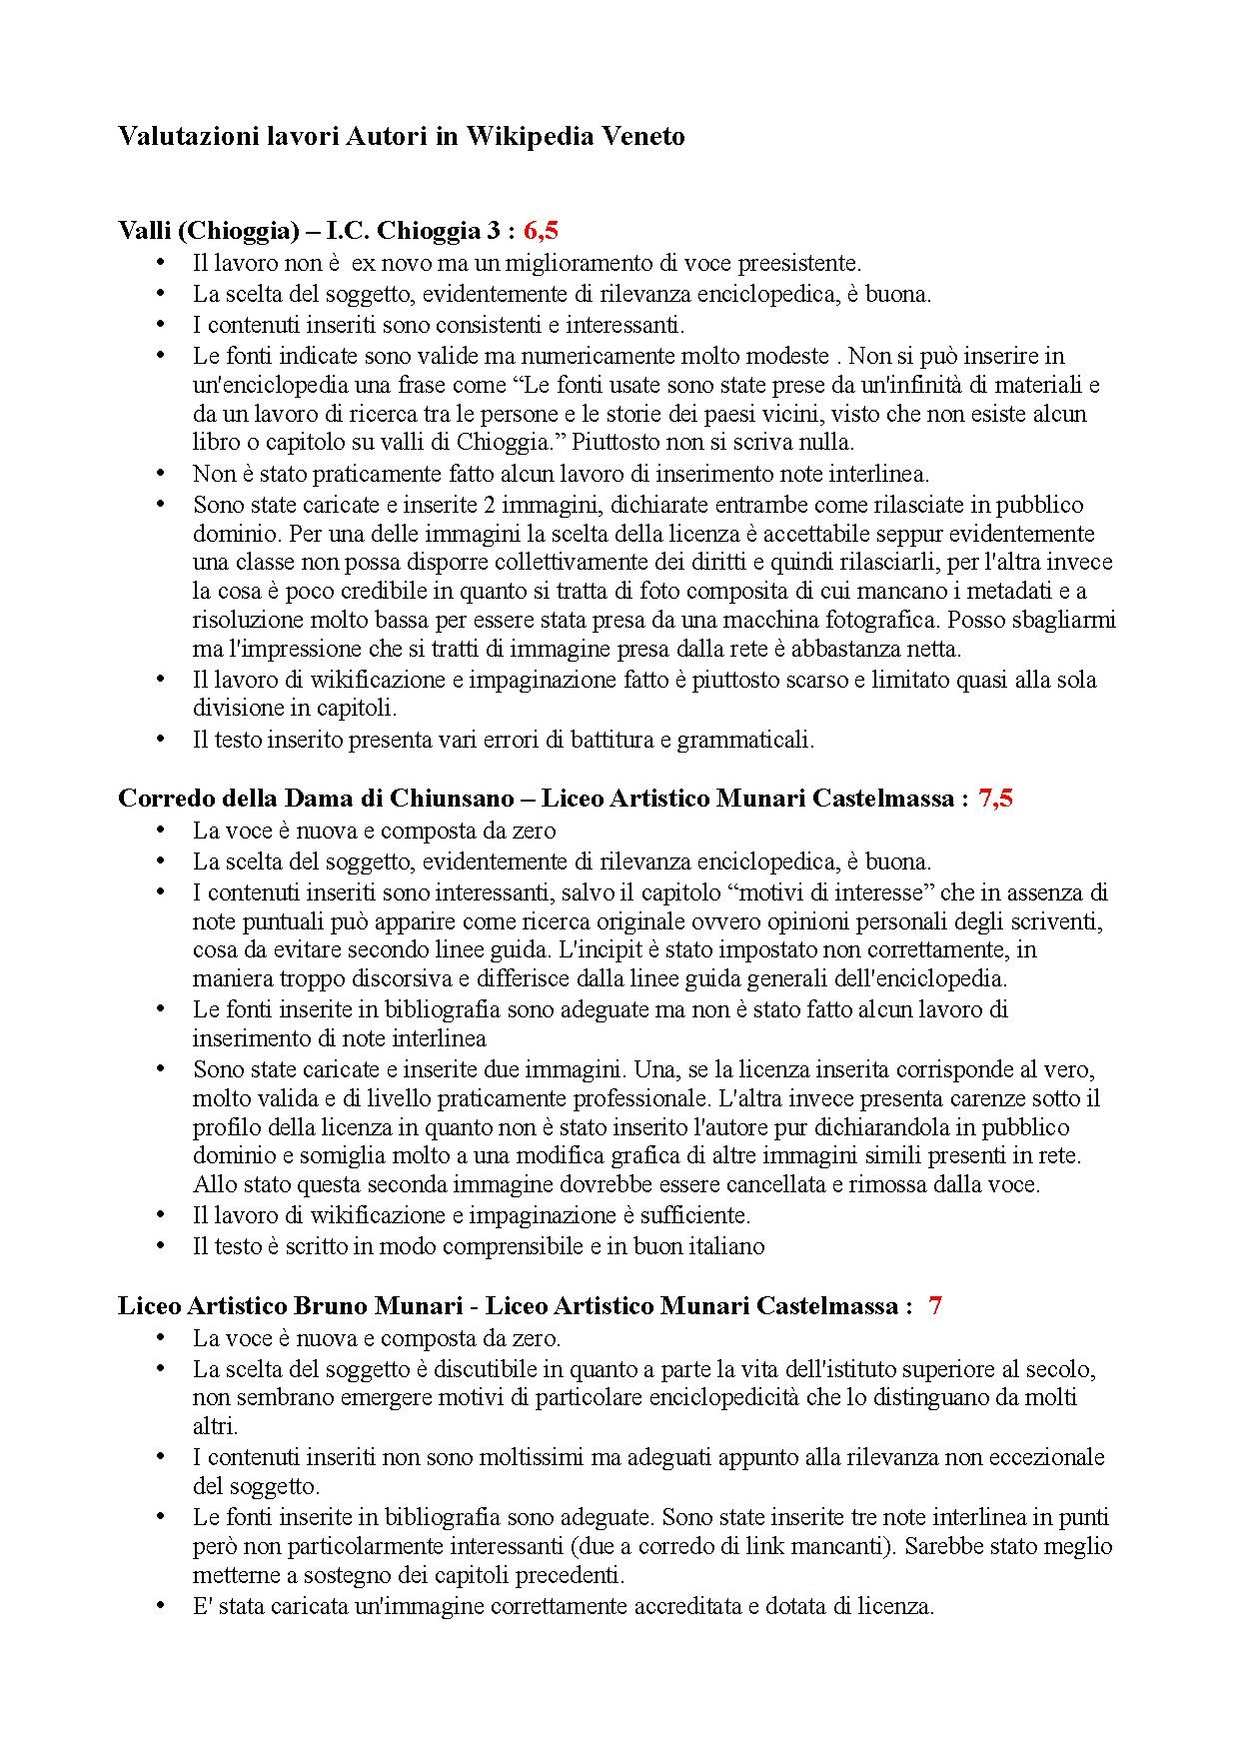 Wikipedia Veneto valutazioni.pdf